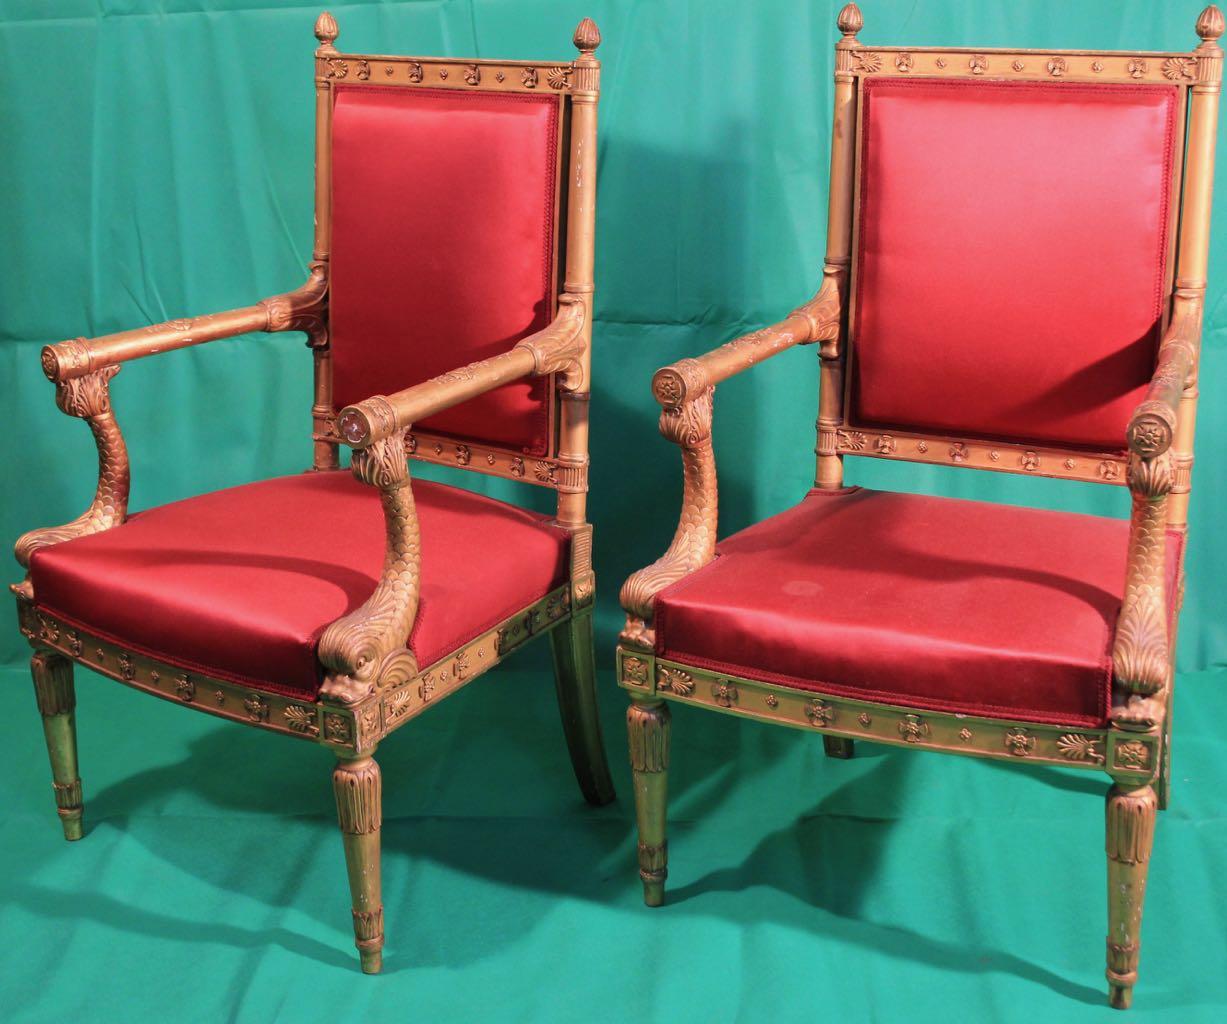 Superbe paire de fauteuils dorés, France, période Napoléon III, signée Quignon.

Frédéric Gustave Quignon, fils de Napoléon Quignon, est né à Paris le 7 novembre 1843. Il travaille avec son père, devient associé en 1872, puis son successeur en